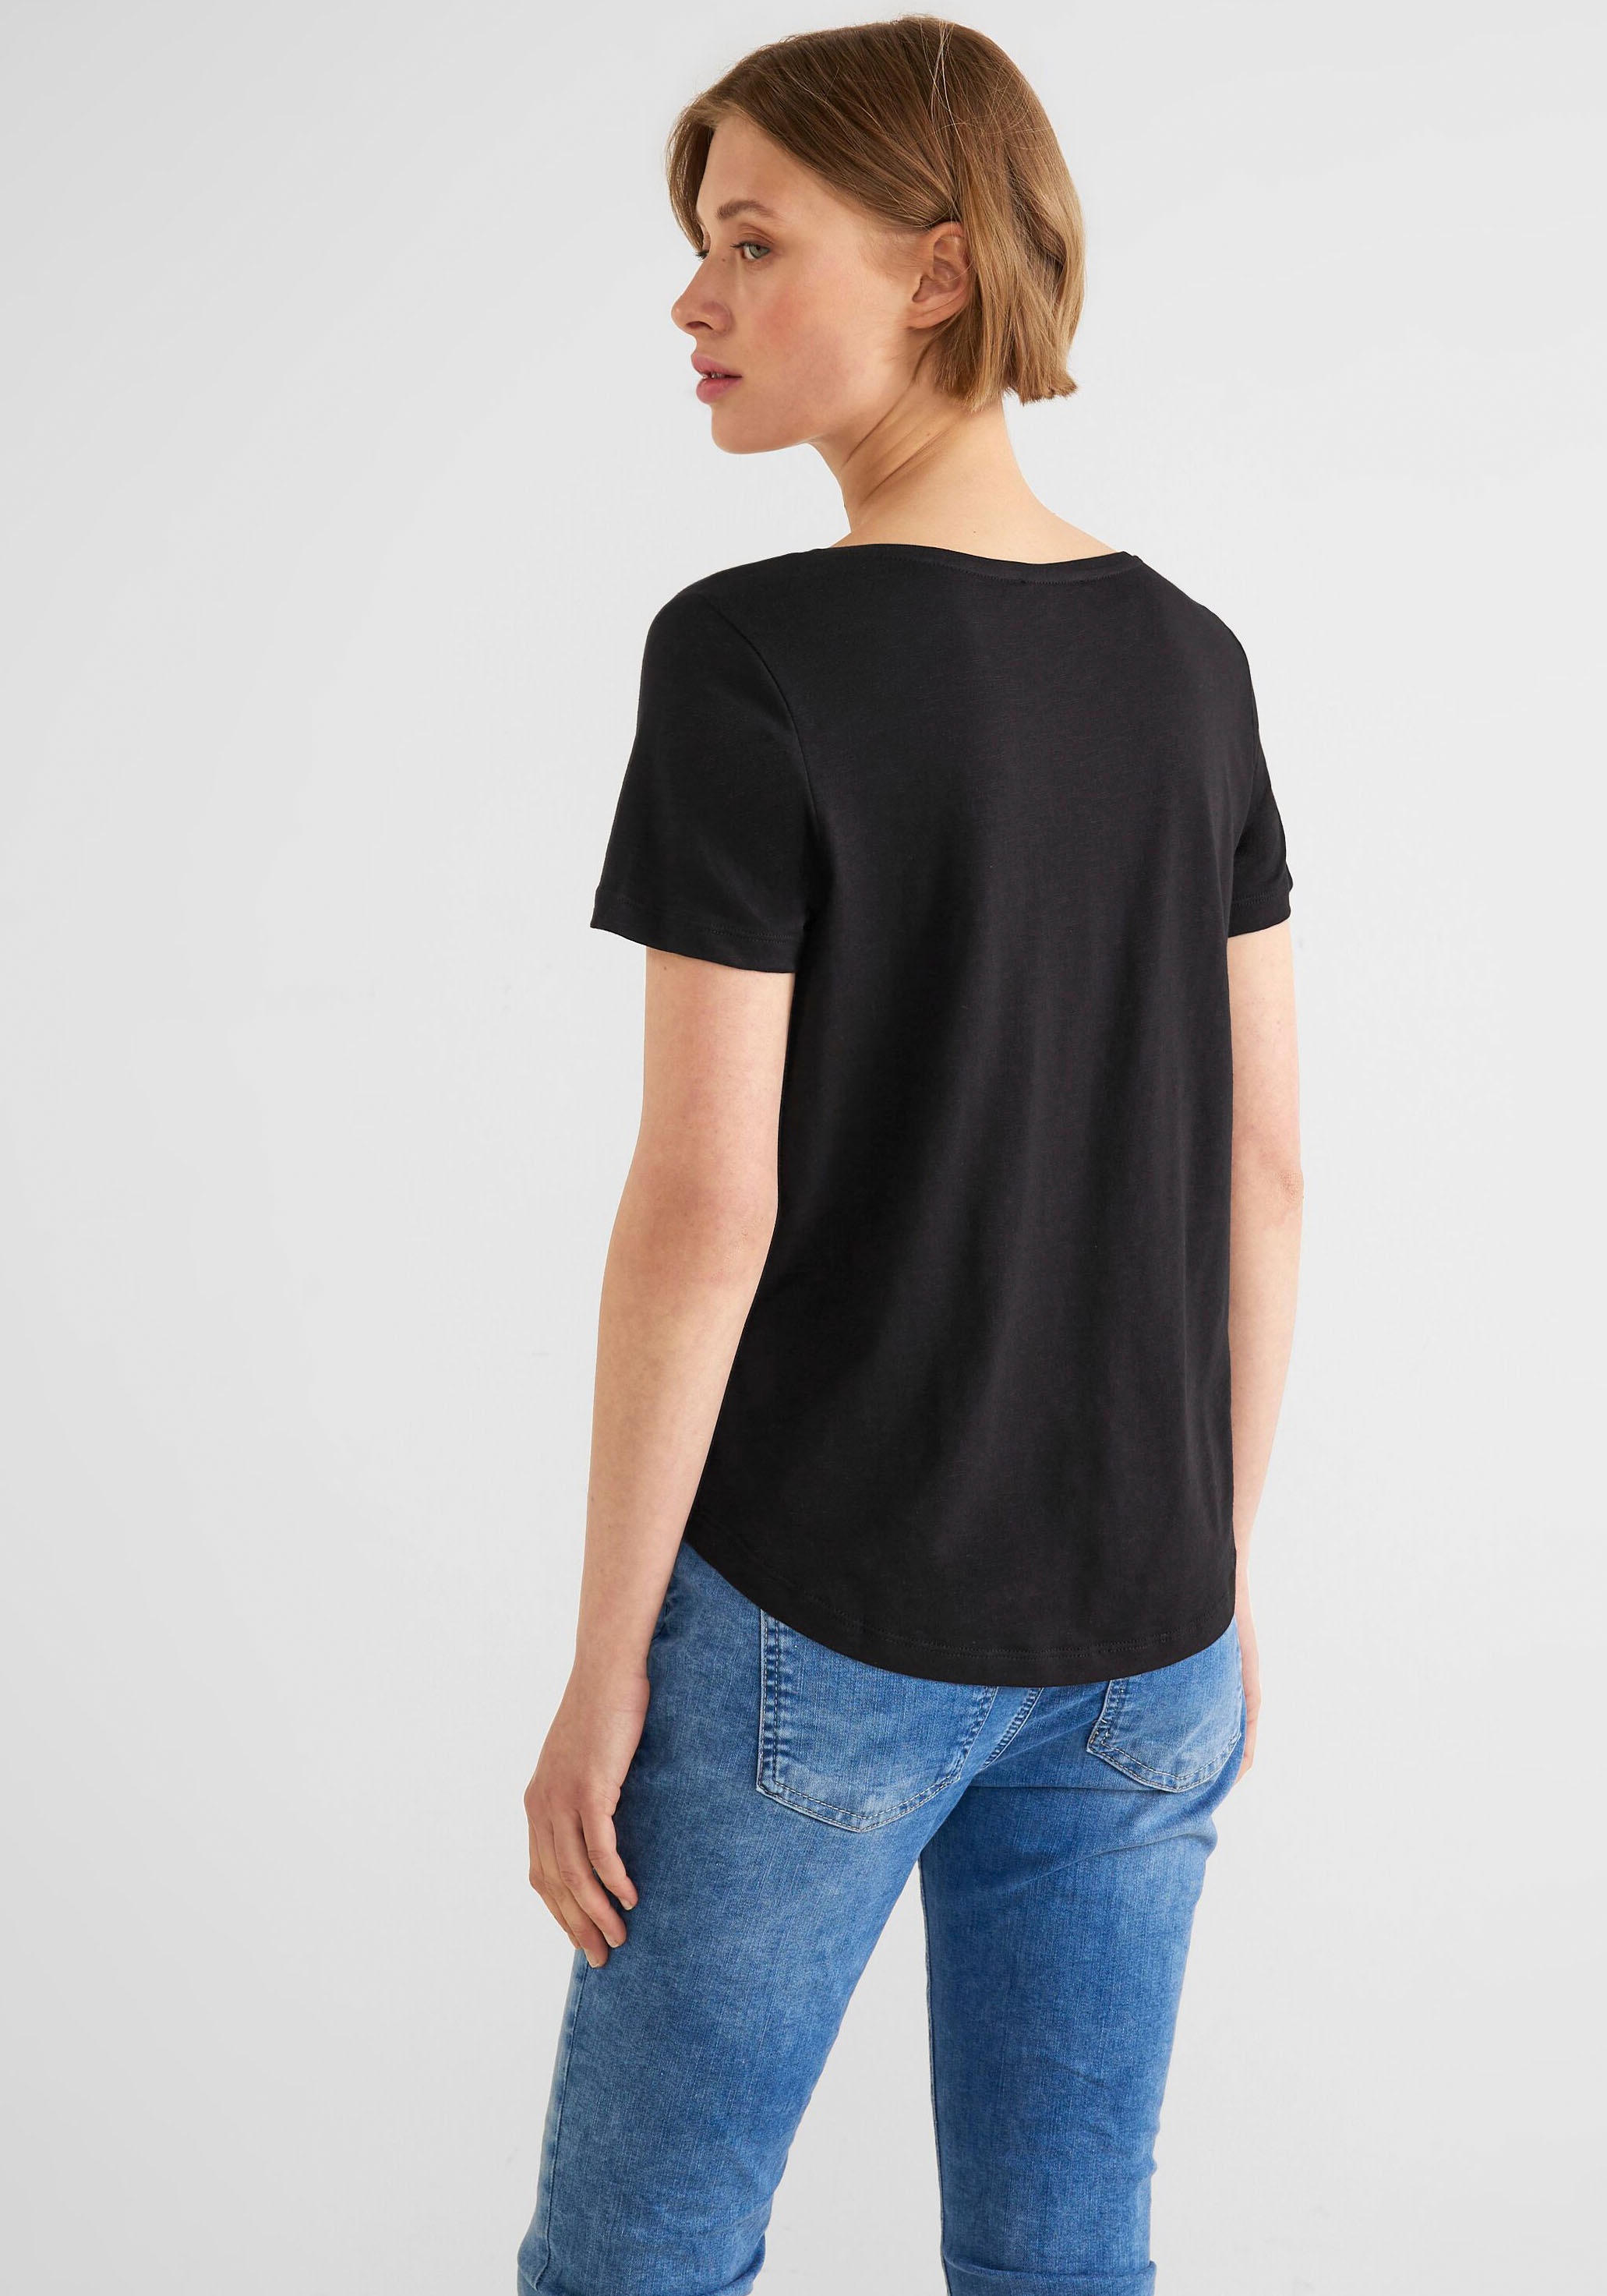 Style T-Shirt, ONE im online Gerda STREET bei